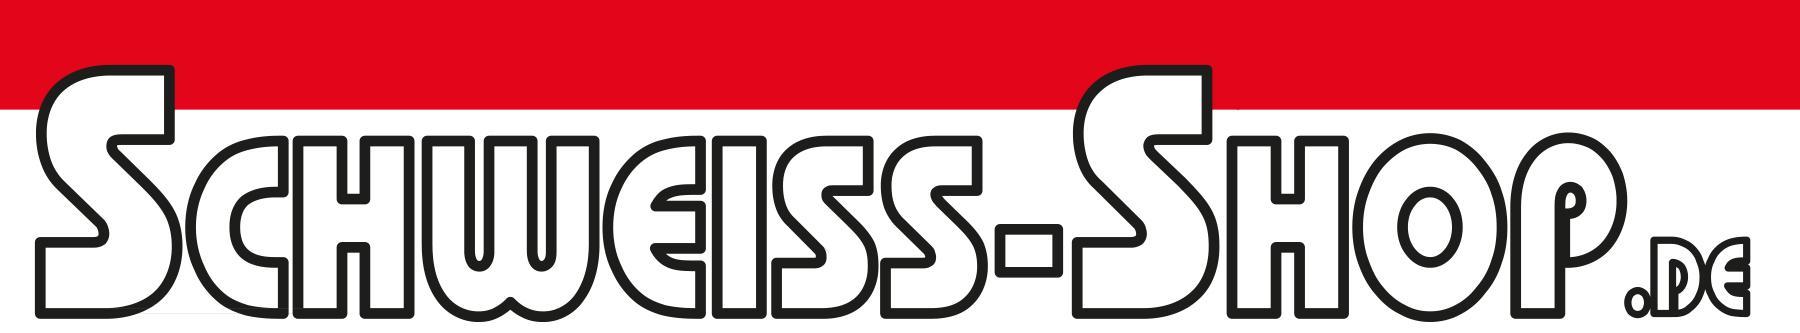 Schweiss-Shop Logo